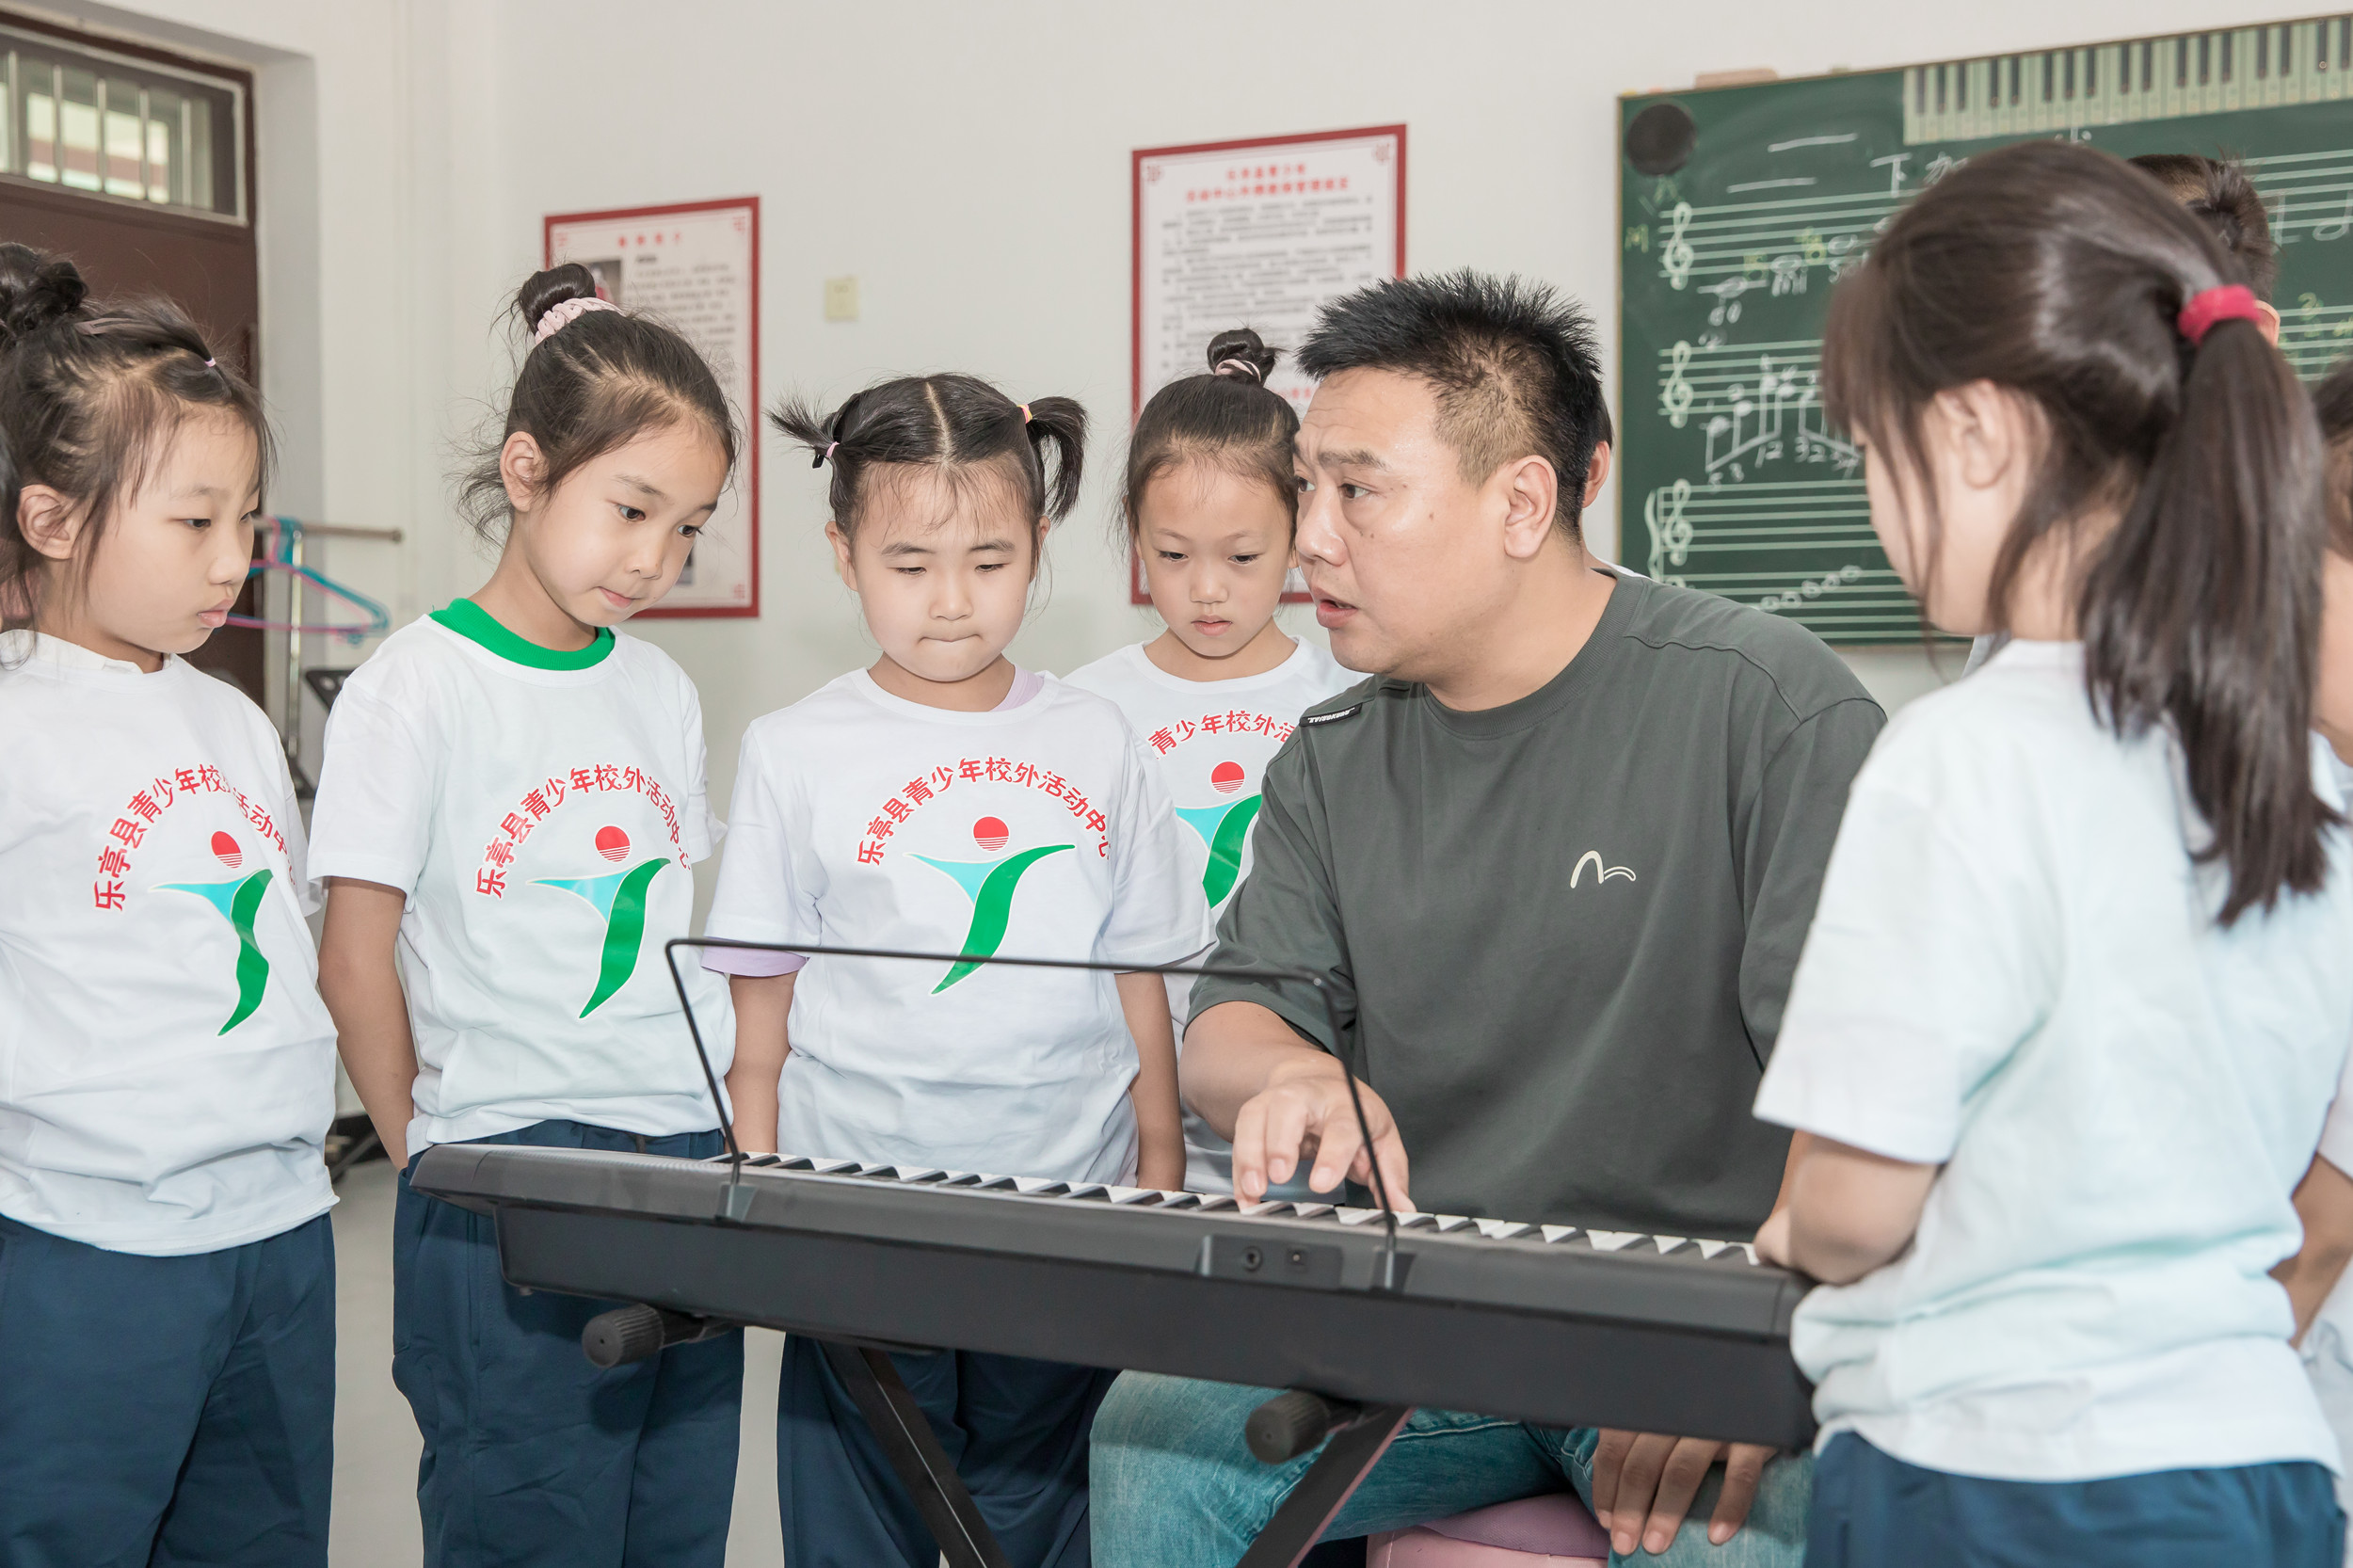 乐亭县青少年活动中心内，老师在教孩子们弹电子琴。 刘建辉摄